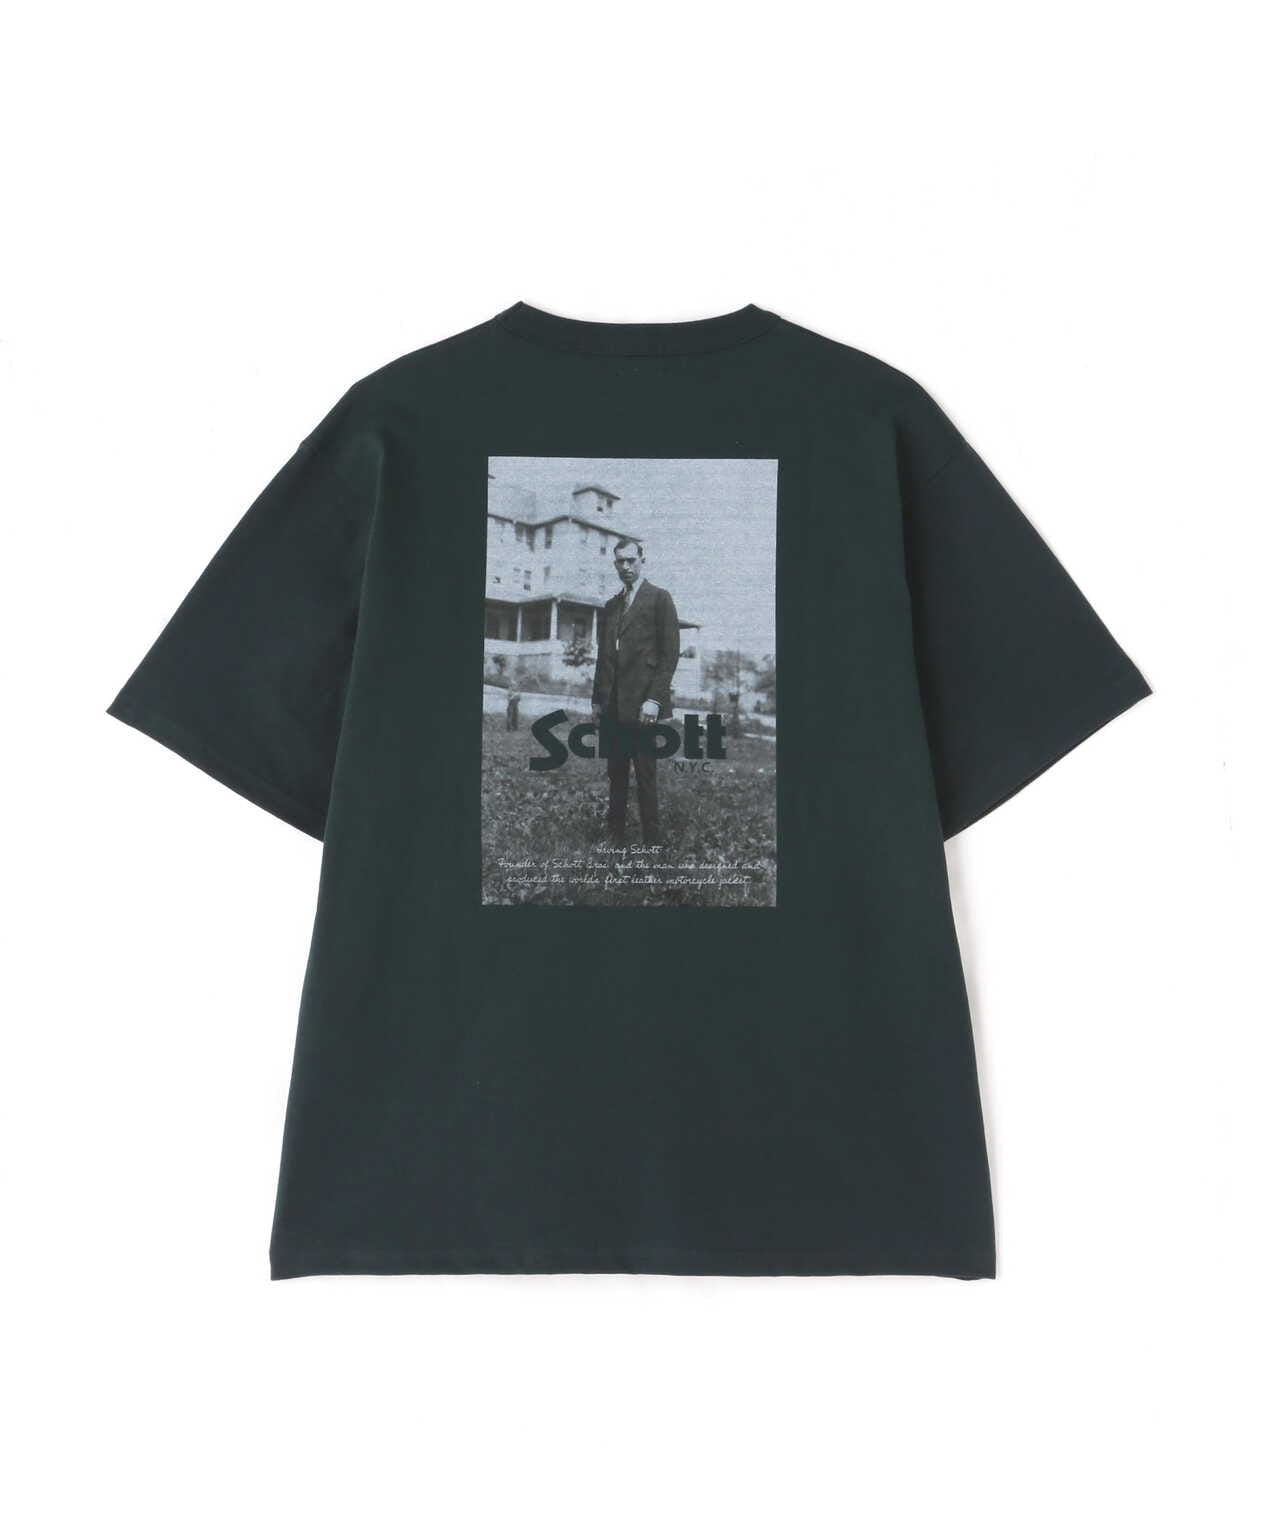 WEB LIMITED】T-SHIRT IRVING SCHOTT/Tシャツ 